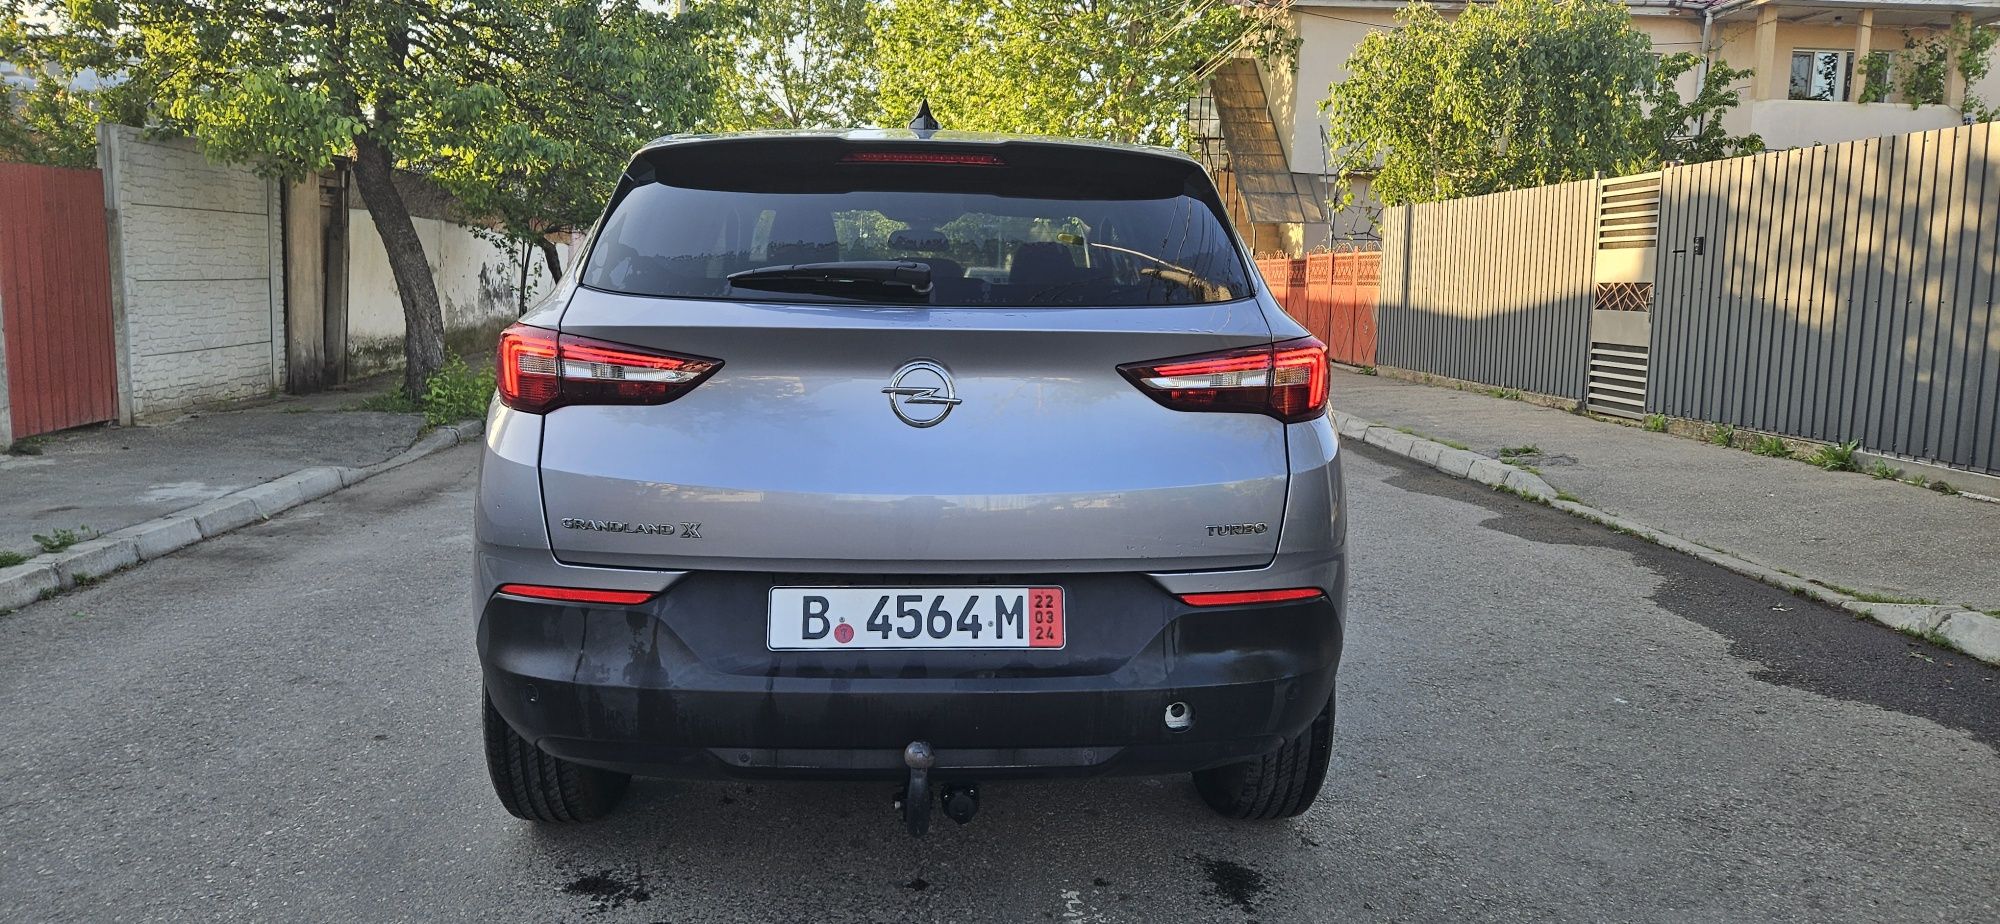 Opel Grandland X 2019 Design Line